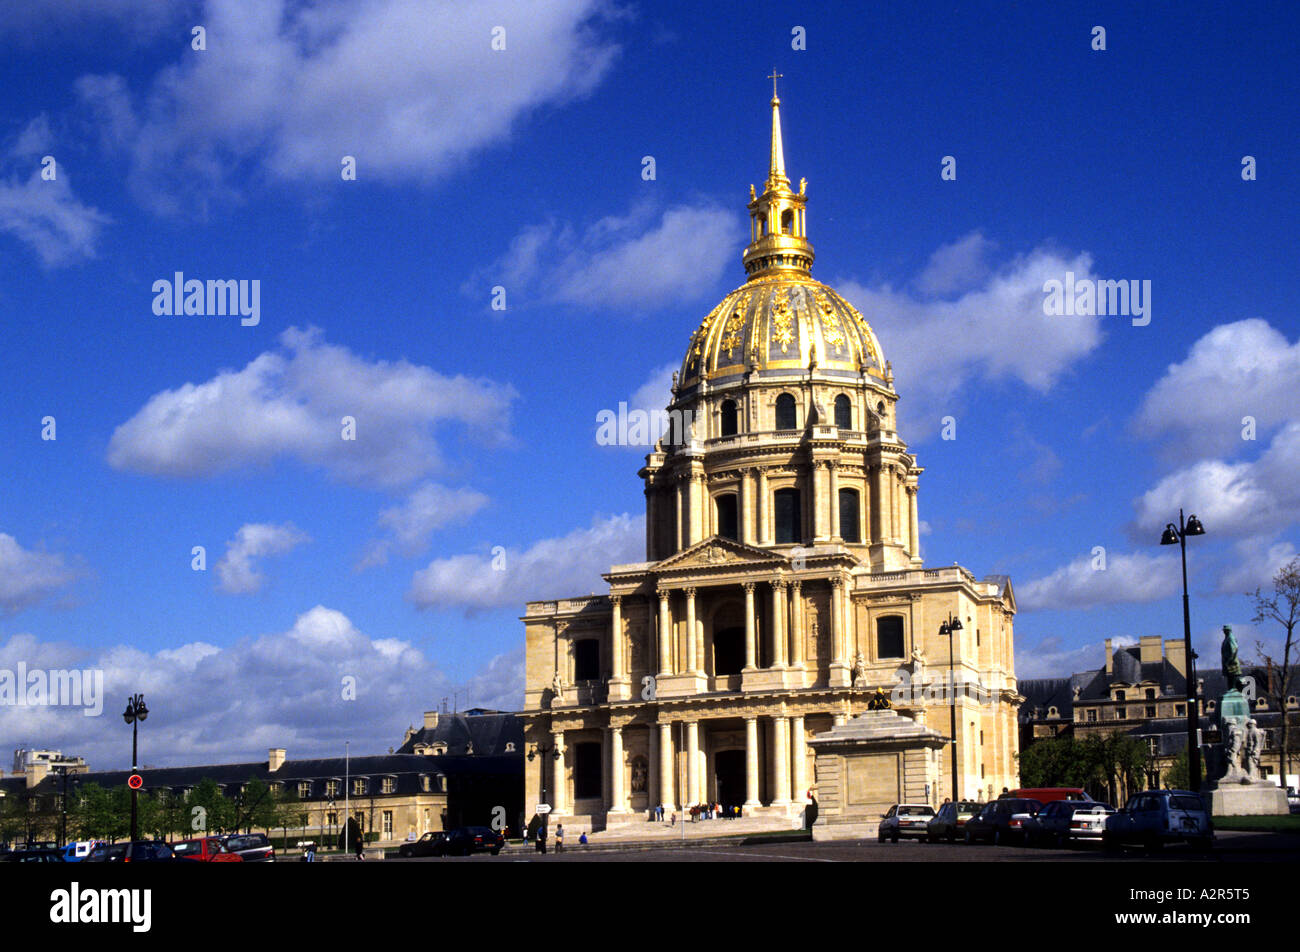 La France célèbre Hôtel des Invalides Dome où tombe de Napoléon réside à Paris France Banque D'Images